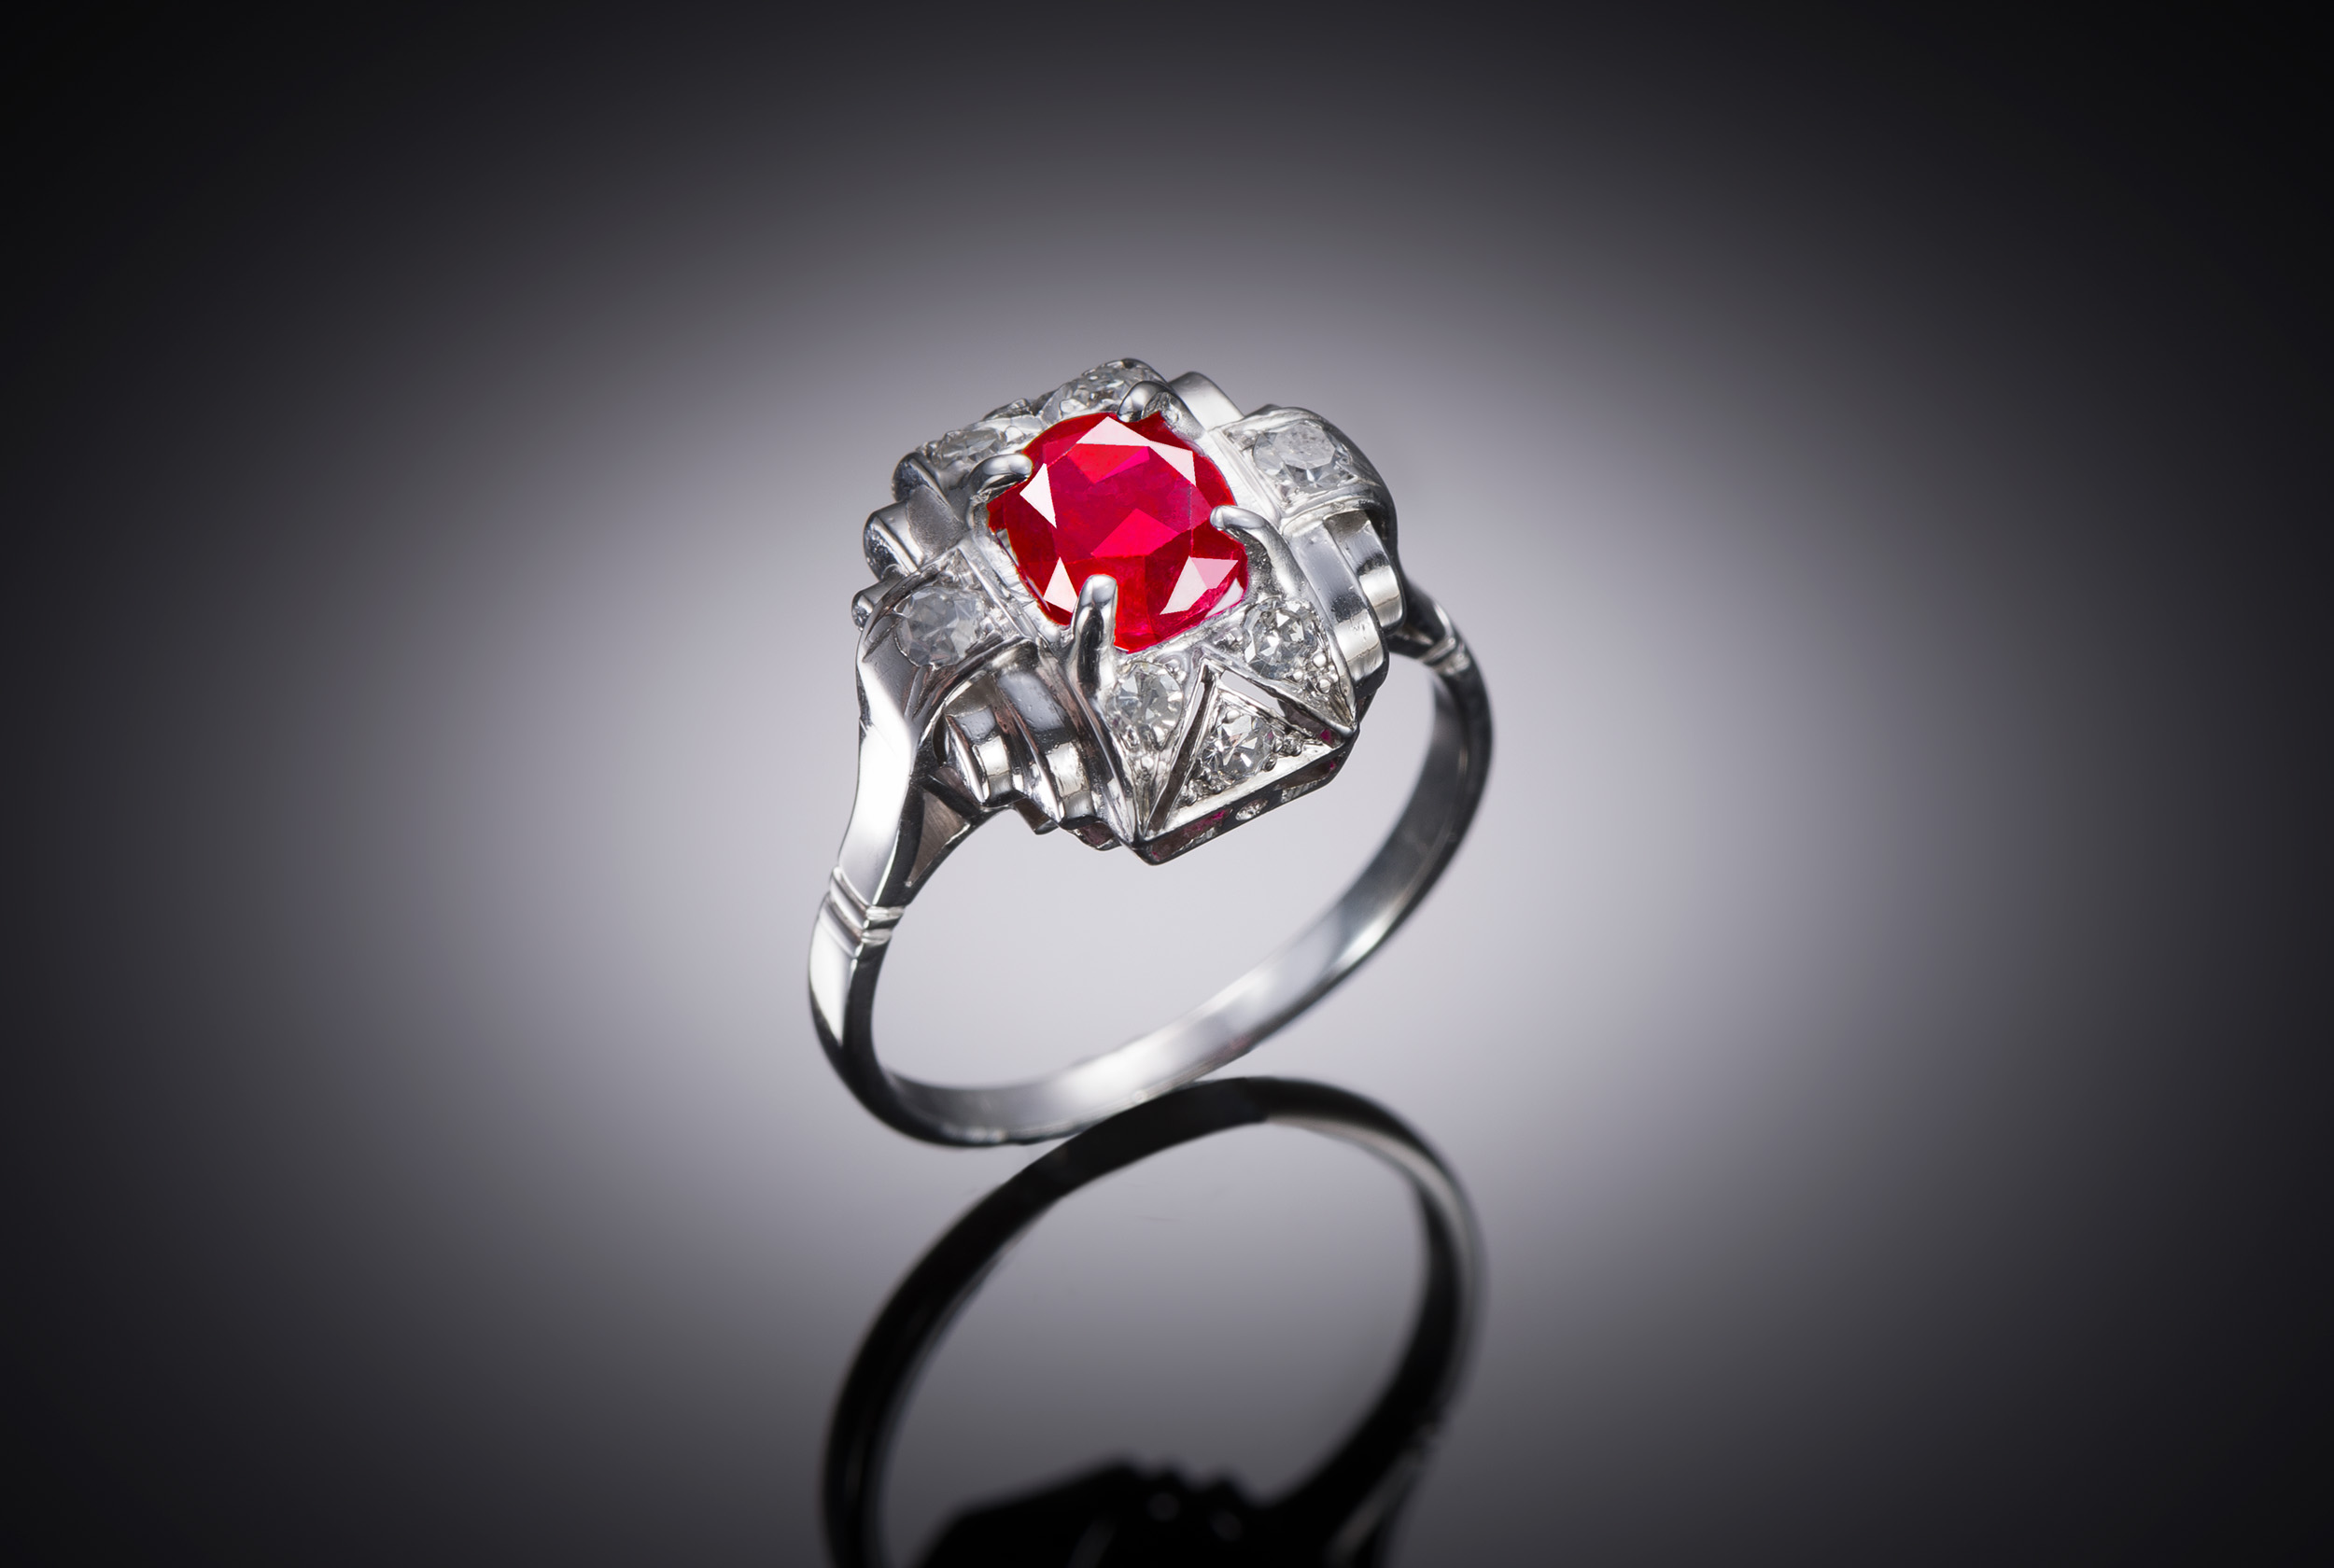 Bague Art déco rubis birman naturel non chauffé rouge intense (certificat laboratoire) et diamants-1